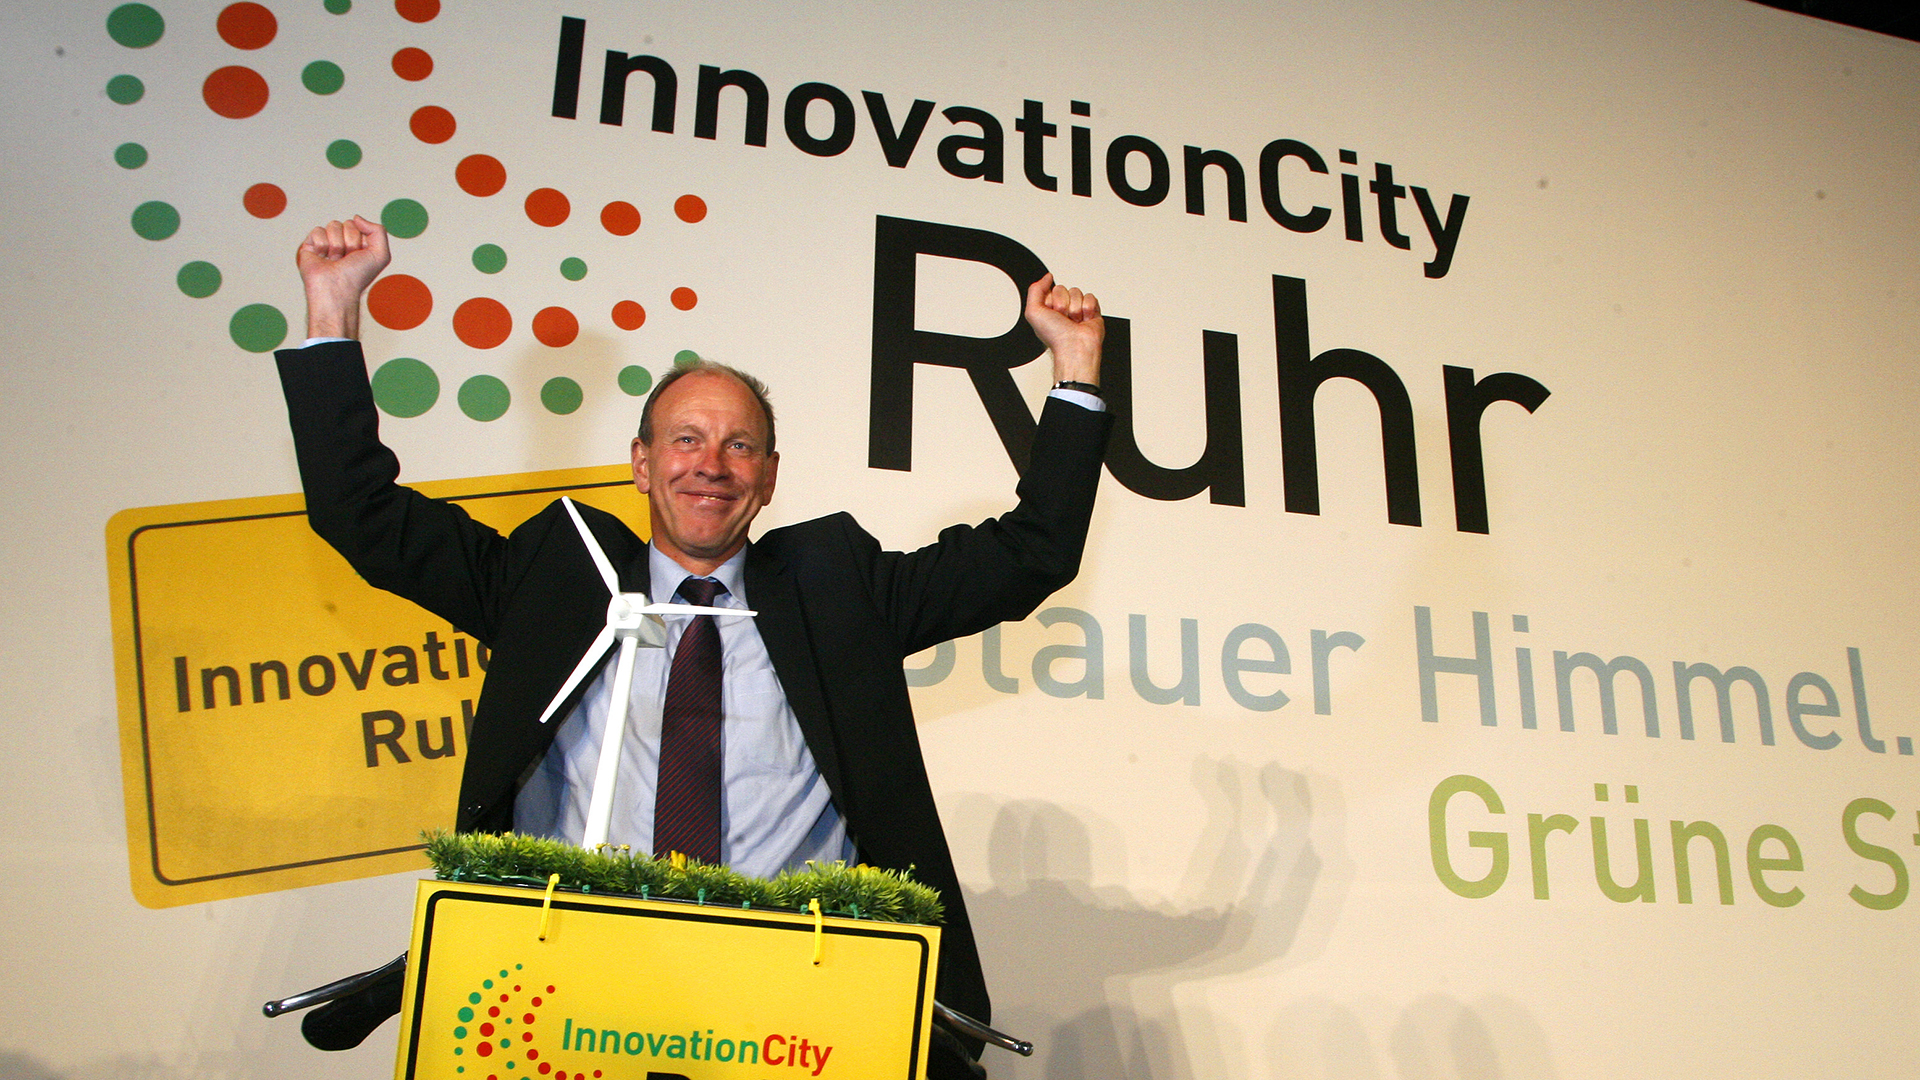  Bernd Tischler sitzt während der Bekanntgabe der "InnovationCity Ruhr" auf einem Elektrofahrrad (Archivbild vom 04.11.2010). | picture alliance / dpa